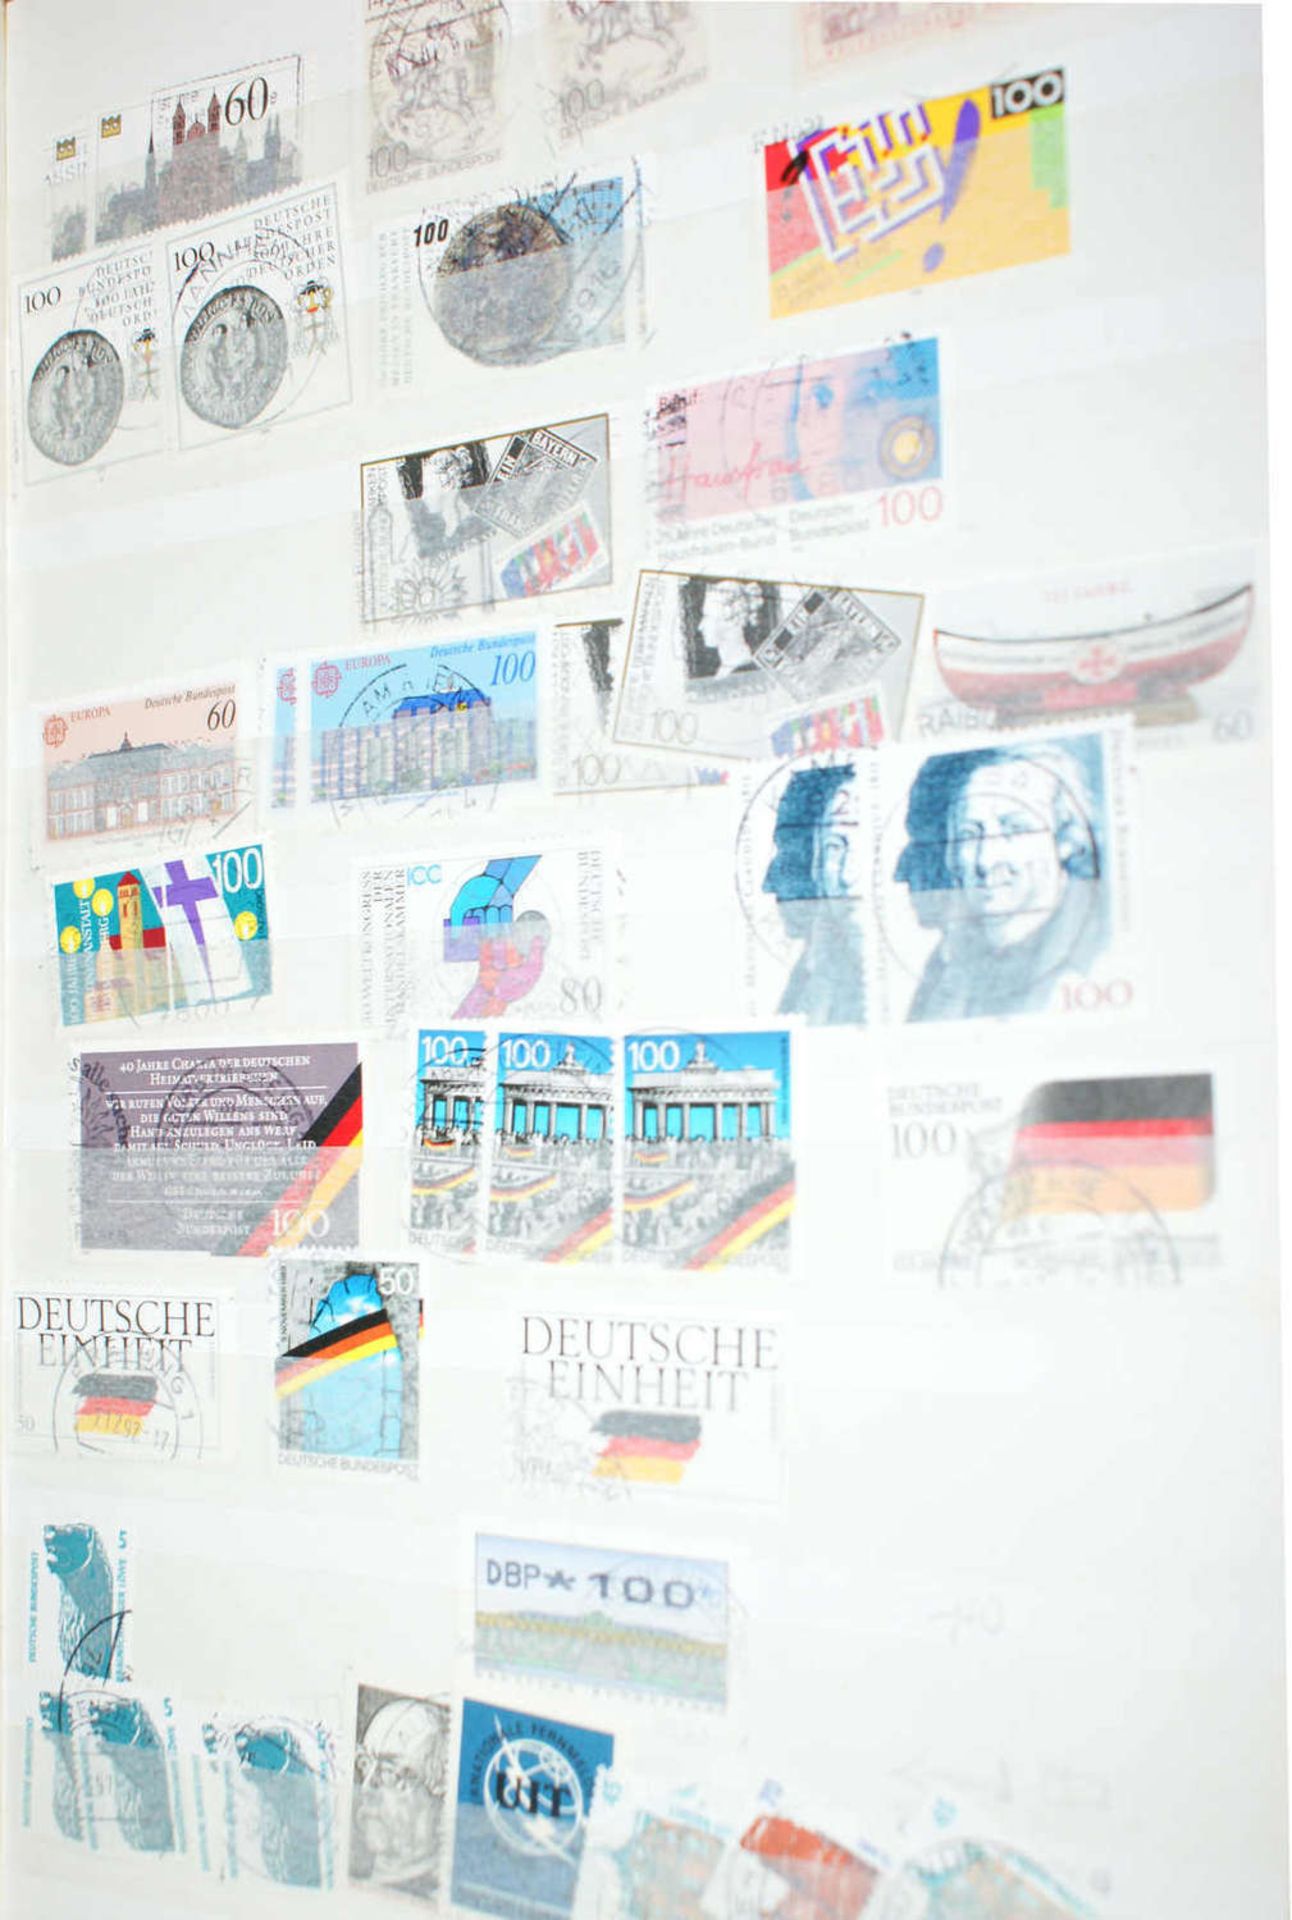 BRD - Briefmarken Dubletten Konvolut, bestehend aus 18 Alben, teilweise schlecht gelagert. - Bild 2 aus 5